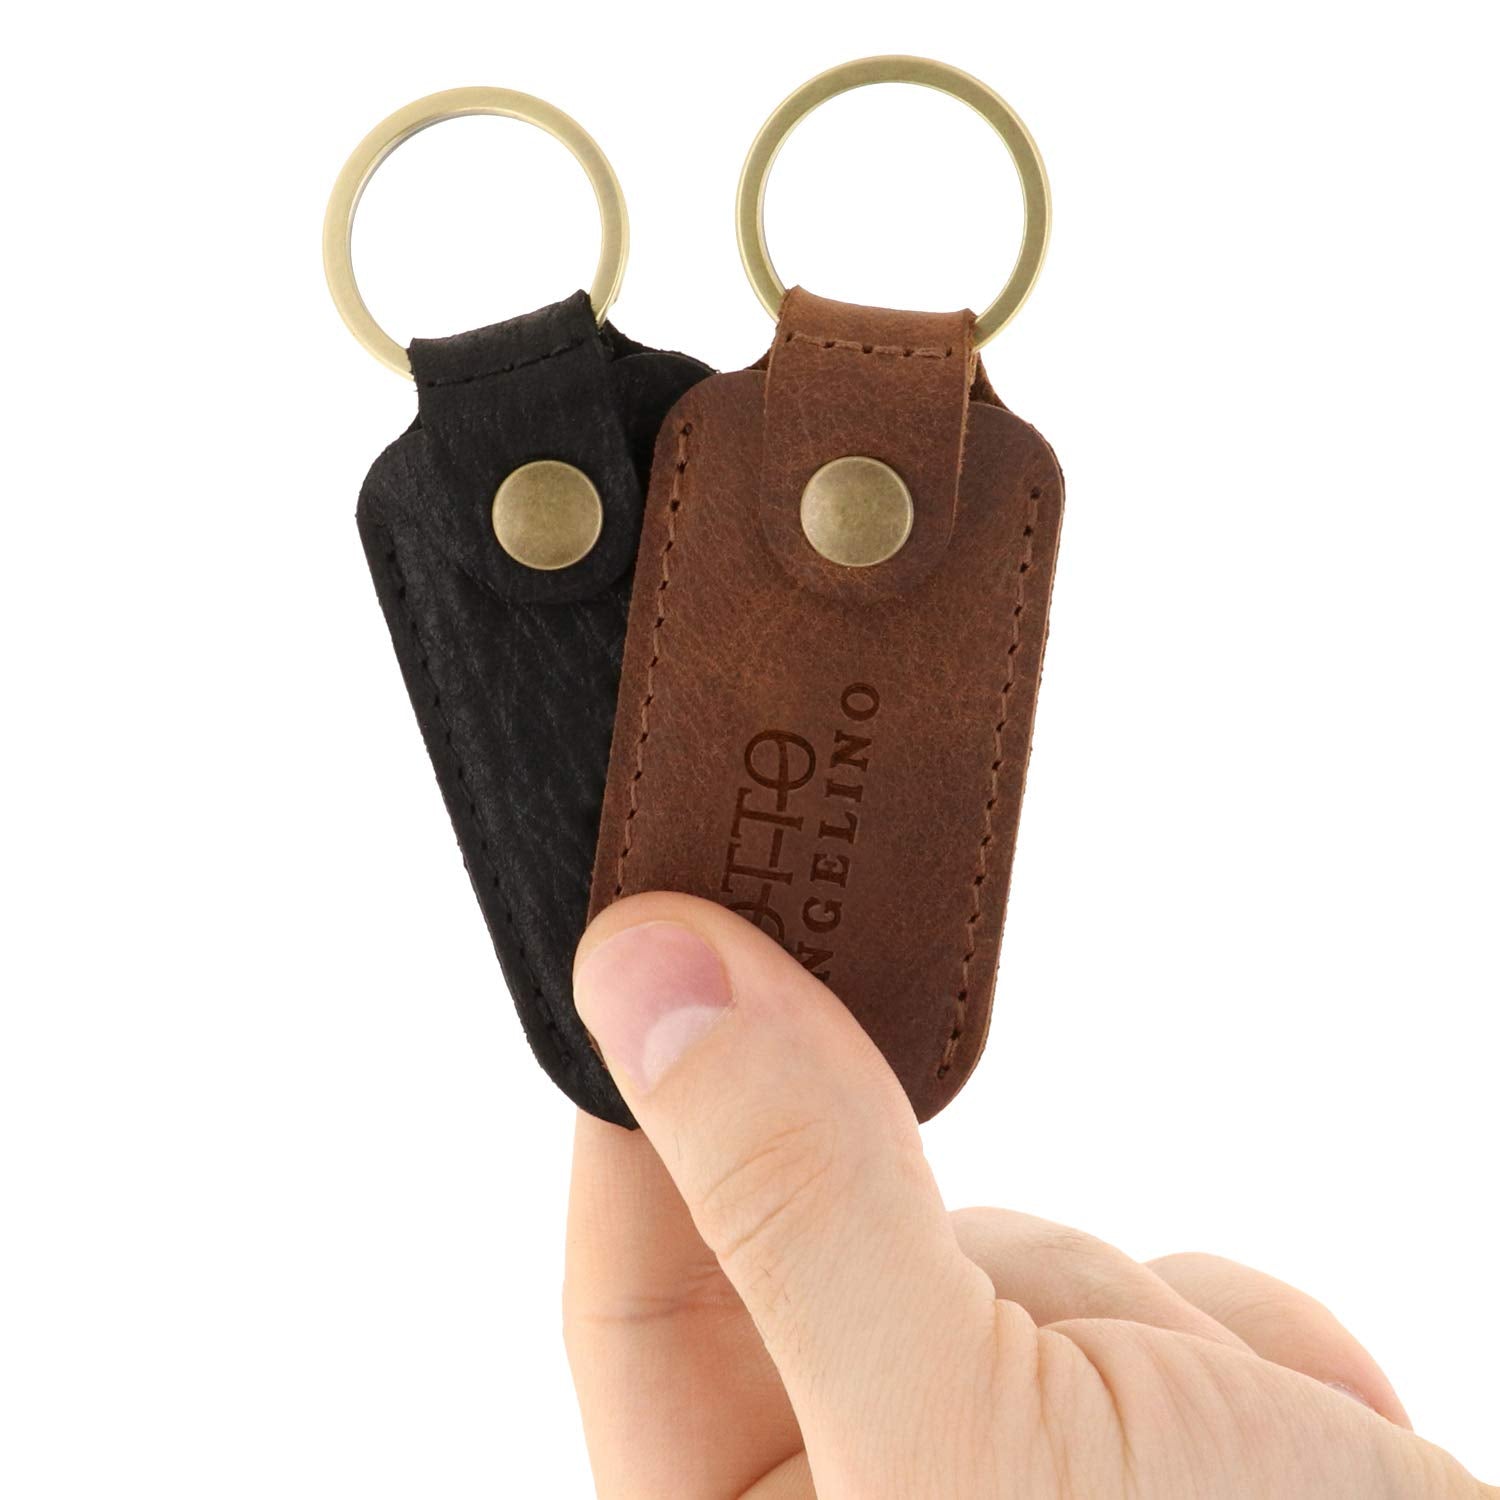 Ledger Nano Leather Keychain Case